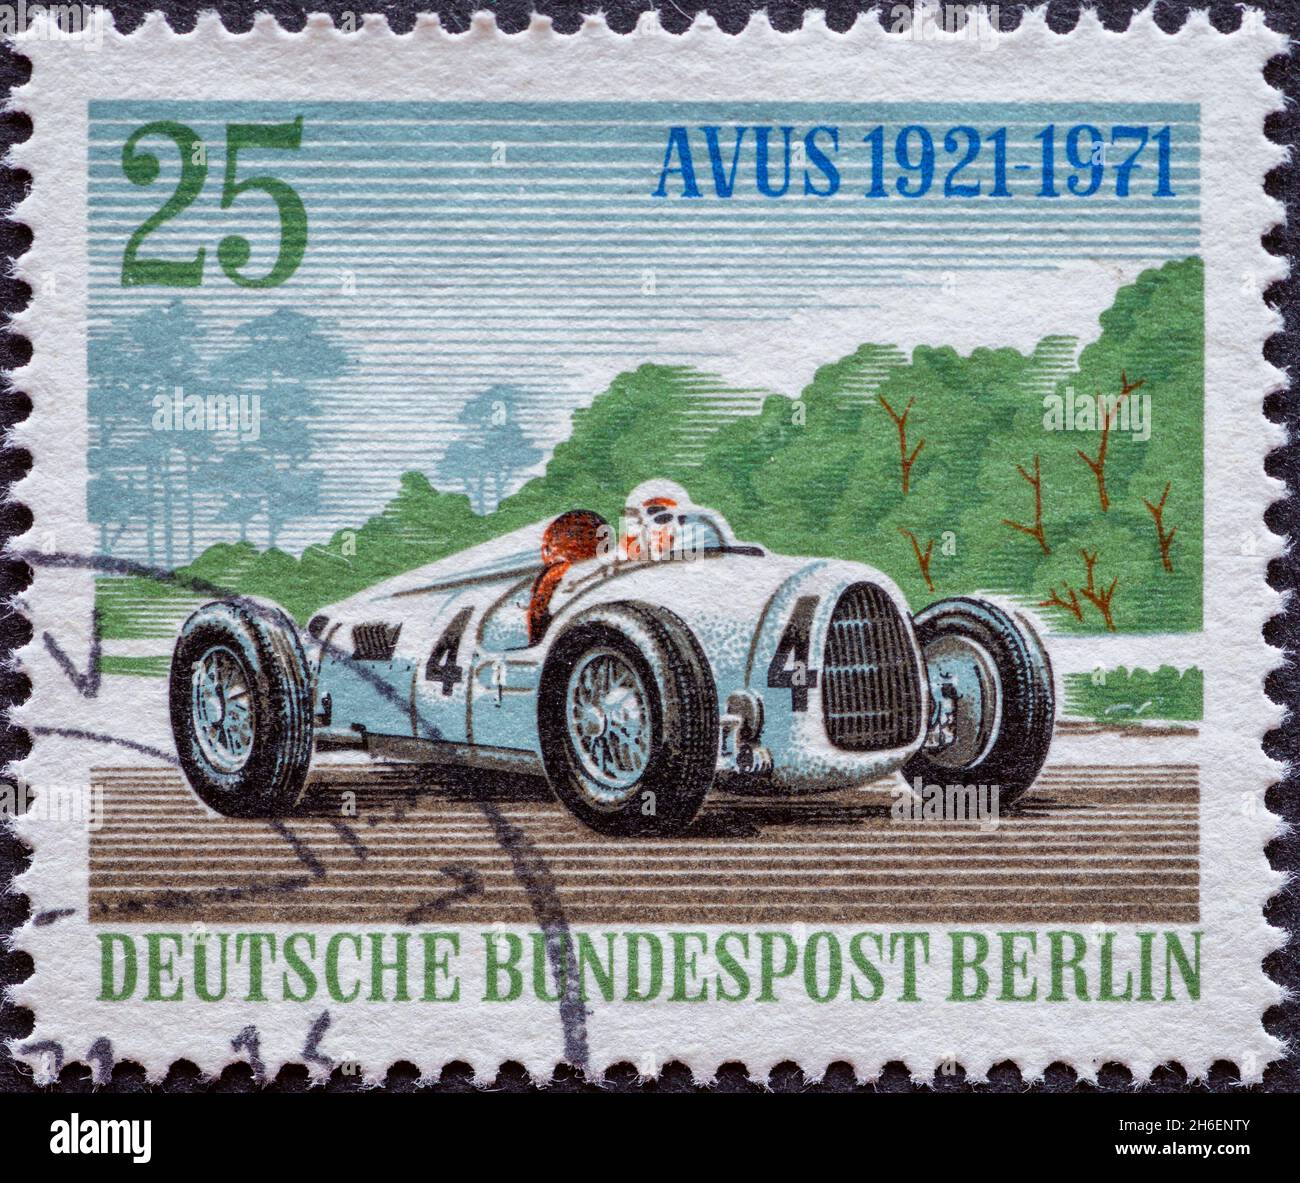 ALLEMAGNE, Berlin - VERS 1971 un timbre-poste de l'Allemagne, Berlin montrant voiture de course pour le 50ème anniversaire de la course Avus: Auto Union racer Banque D'Images